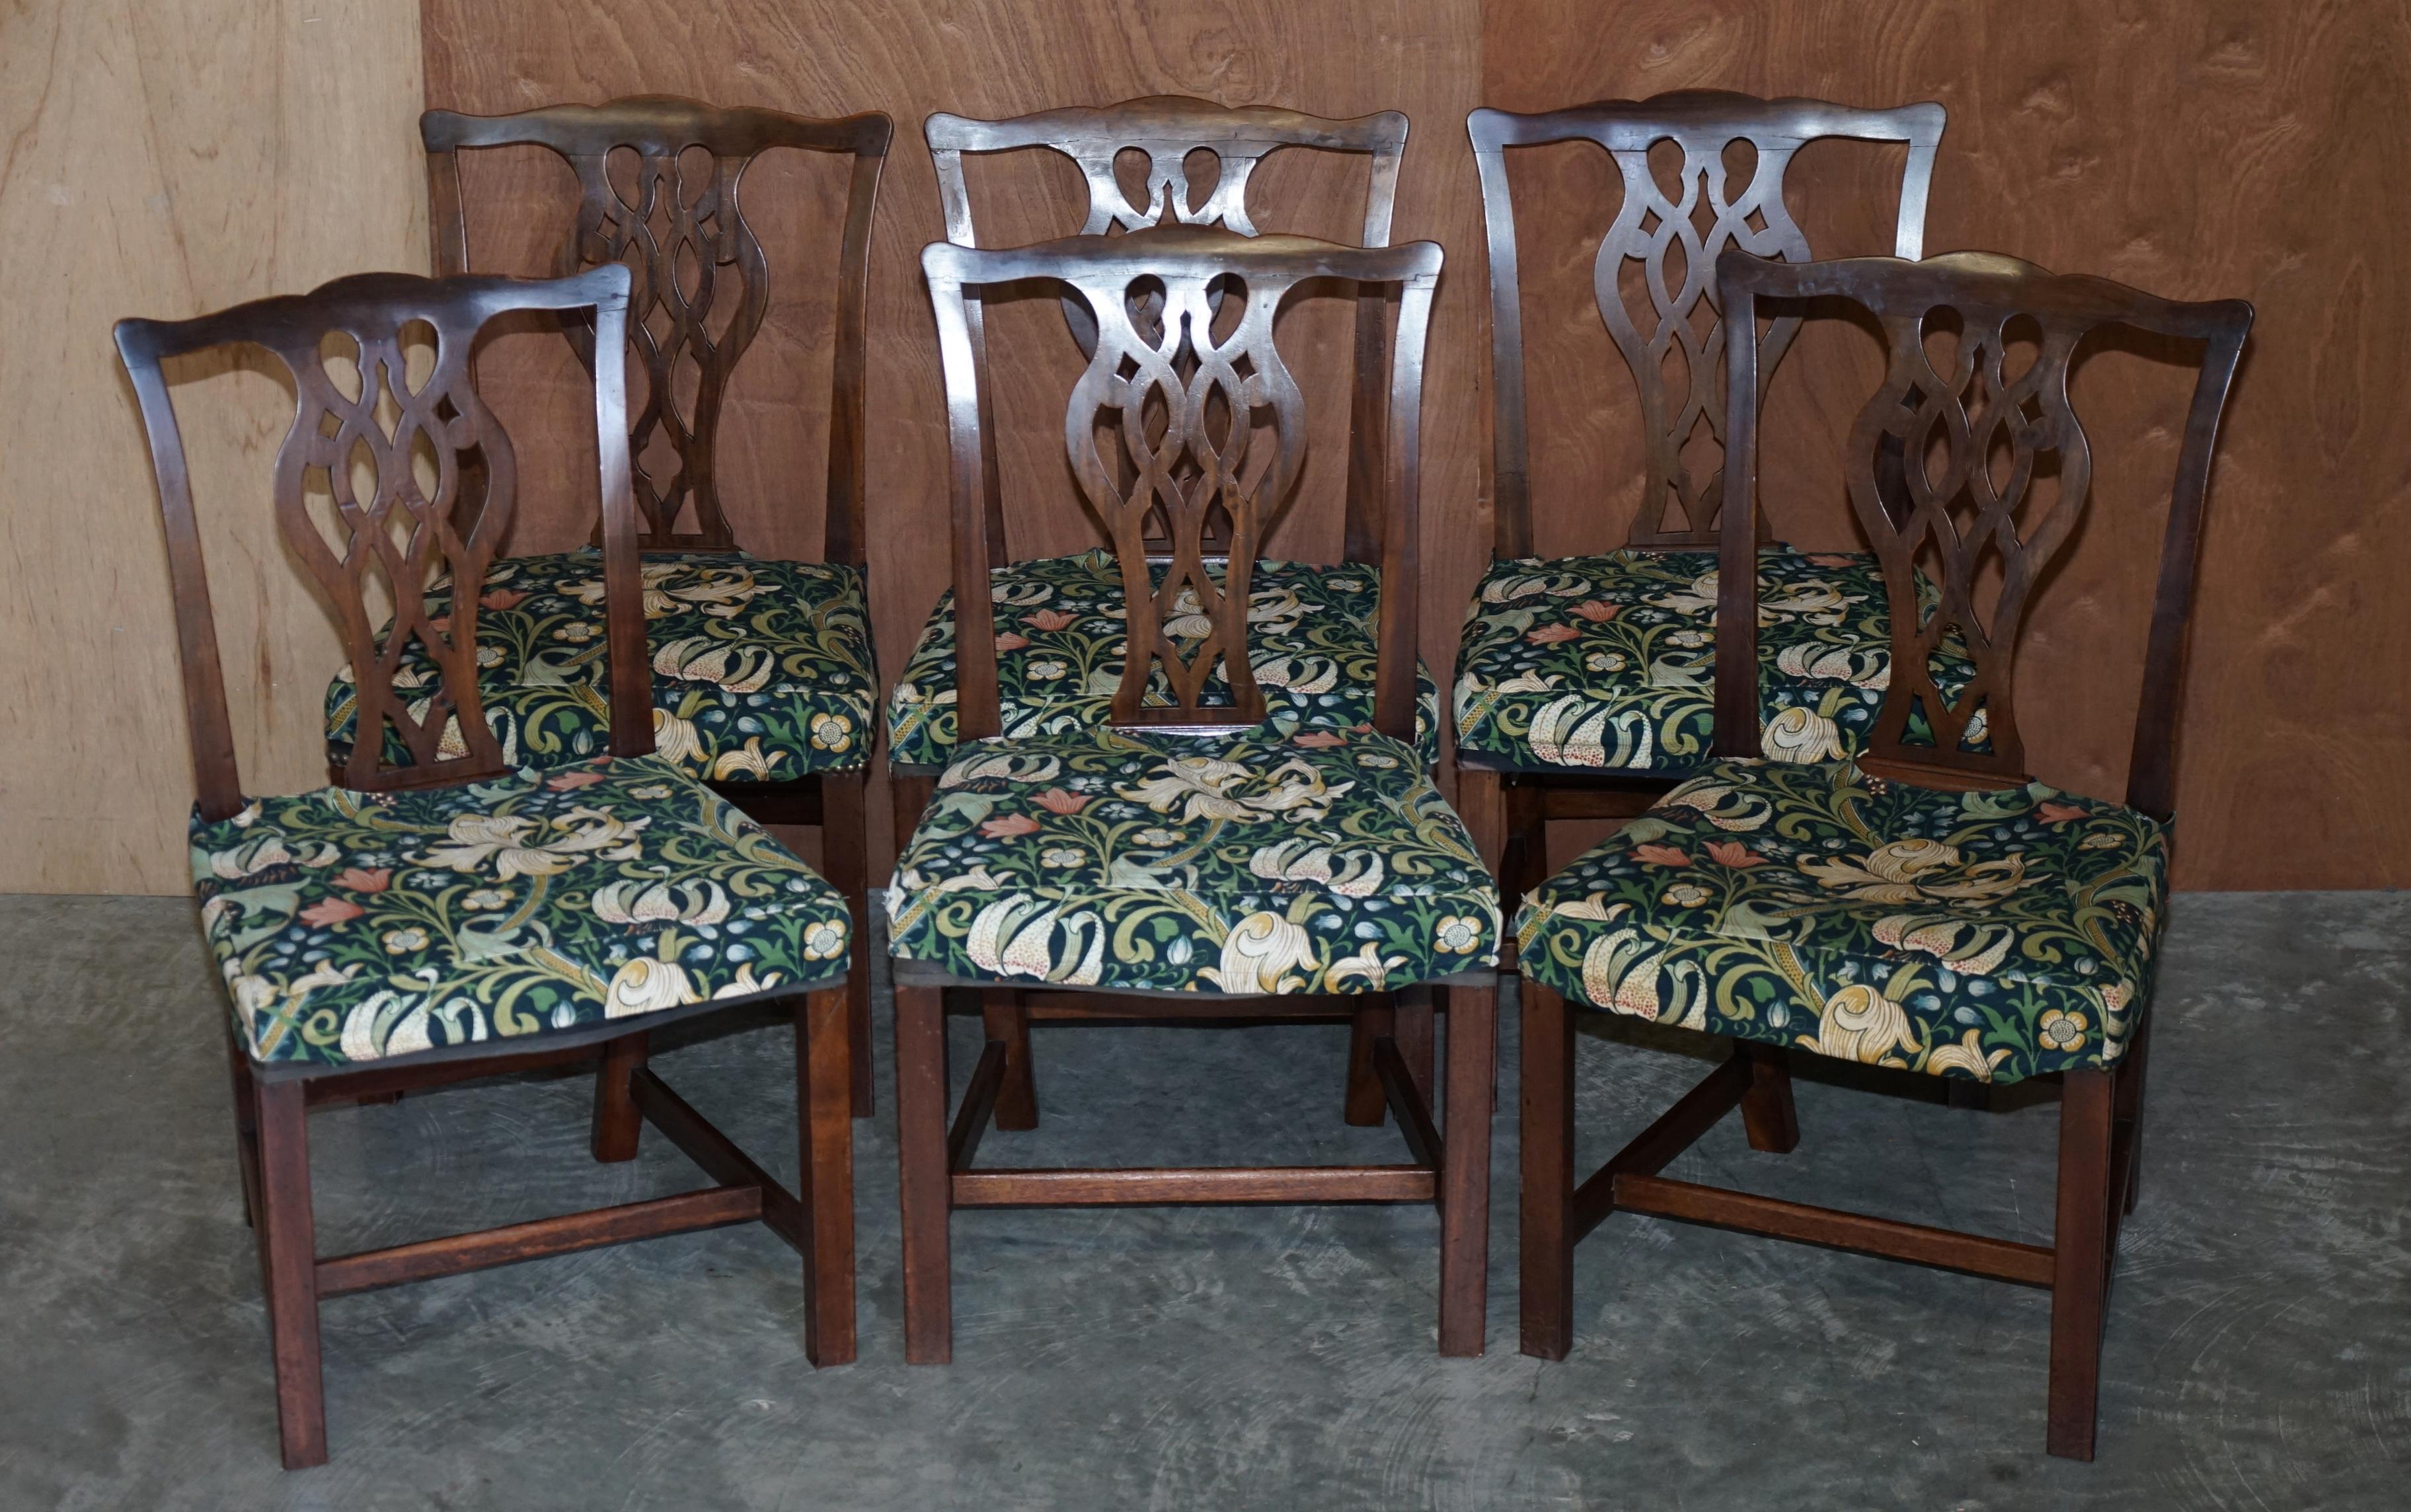 Nous sommes ravis d'offrir cette série de huit chaises de salle à manger en acajou d'époque George III vers 1830, fabriquées à la main en Angleterre d'après Thomas Chippendale, avec des housses d'assise amovibles de William Morris.

Ces chaises